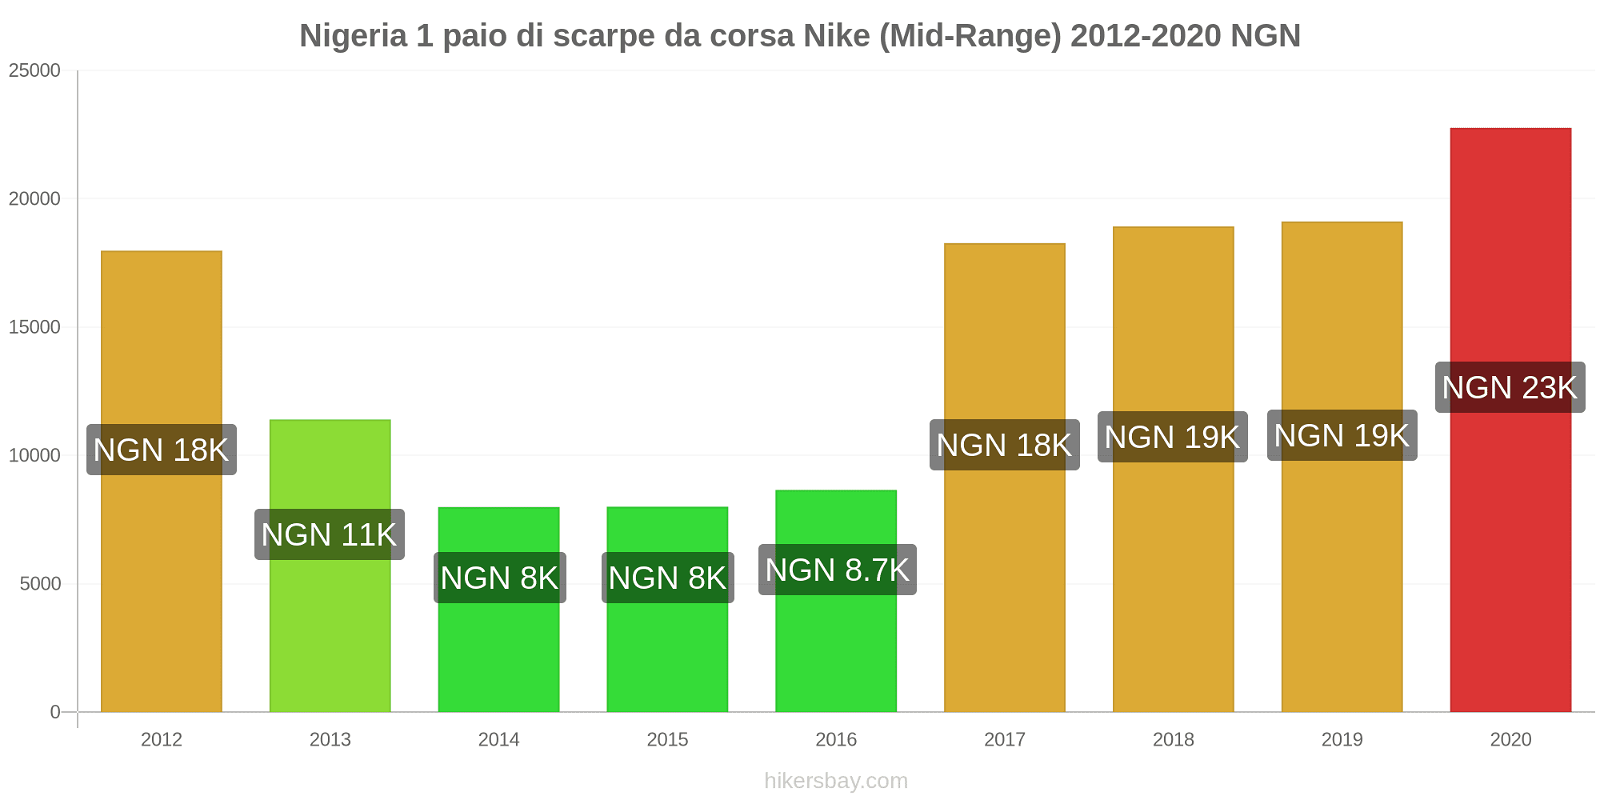 Nigeria variazioni di prezzo 1 paio di scarpe da corsa Nike (simile) hikersbay.com